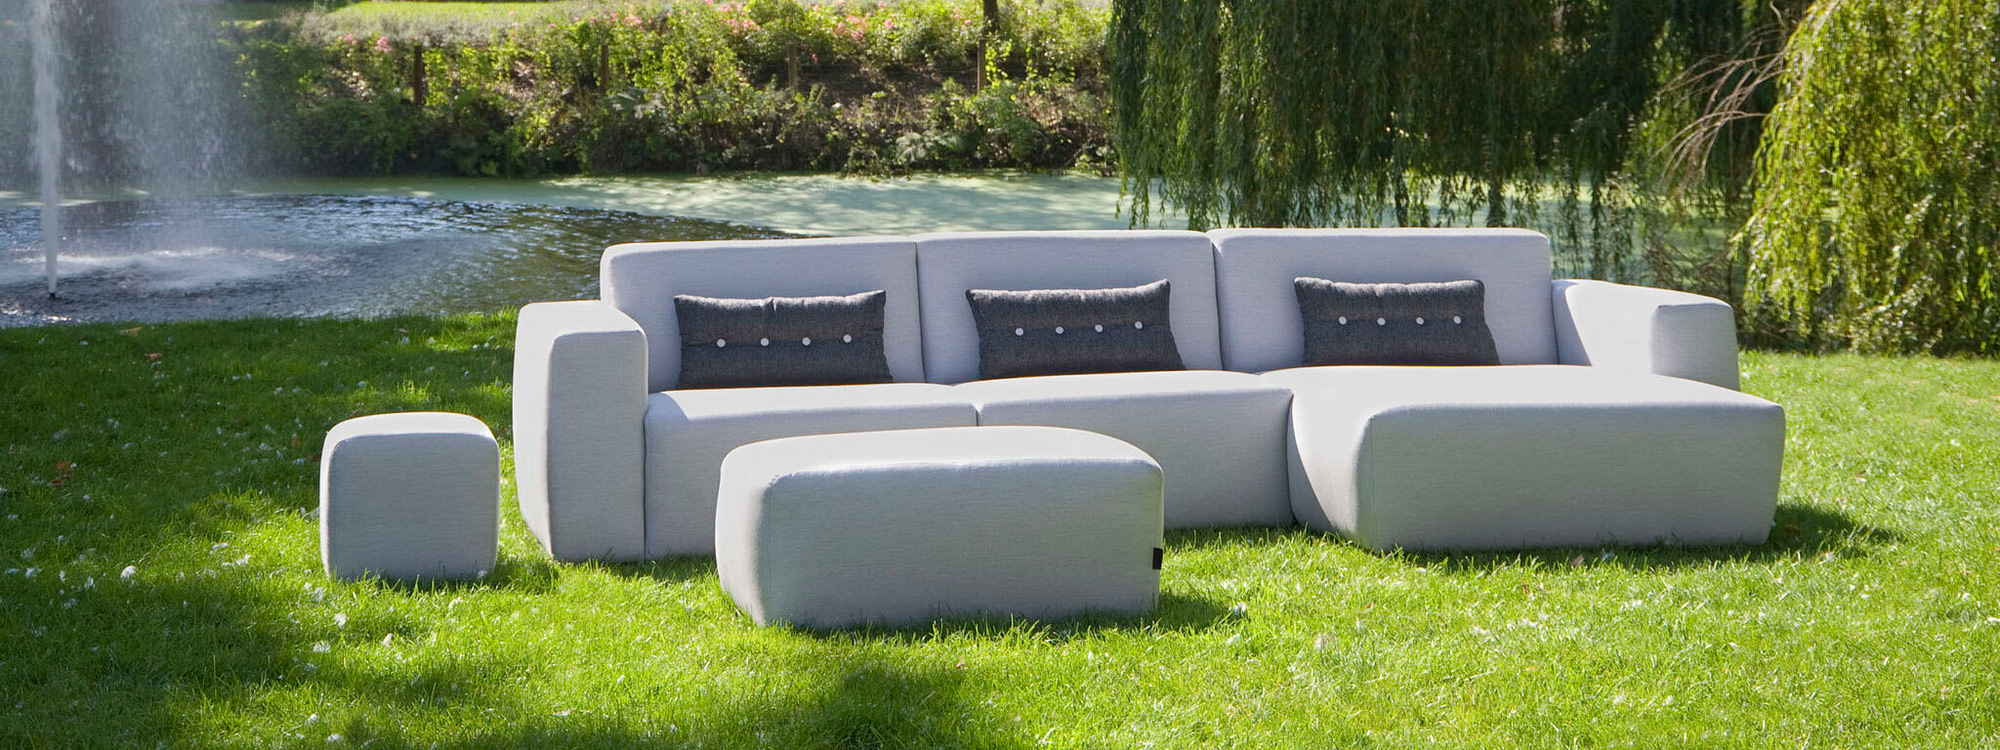 Buitenmeubels Prachtige meubels voor in de tuin UrbanSofa